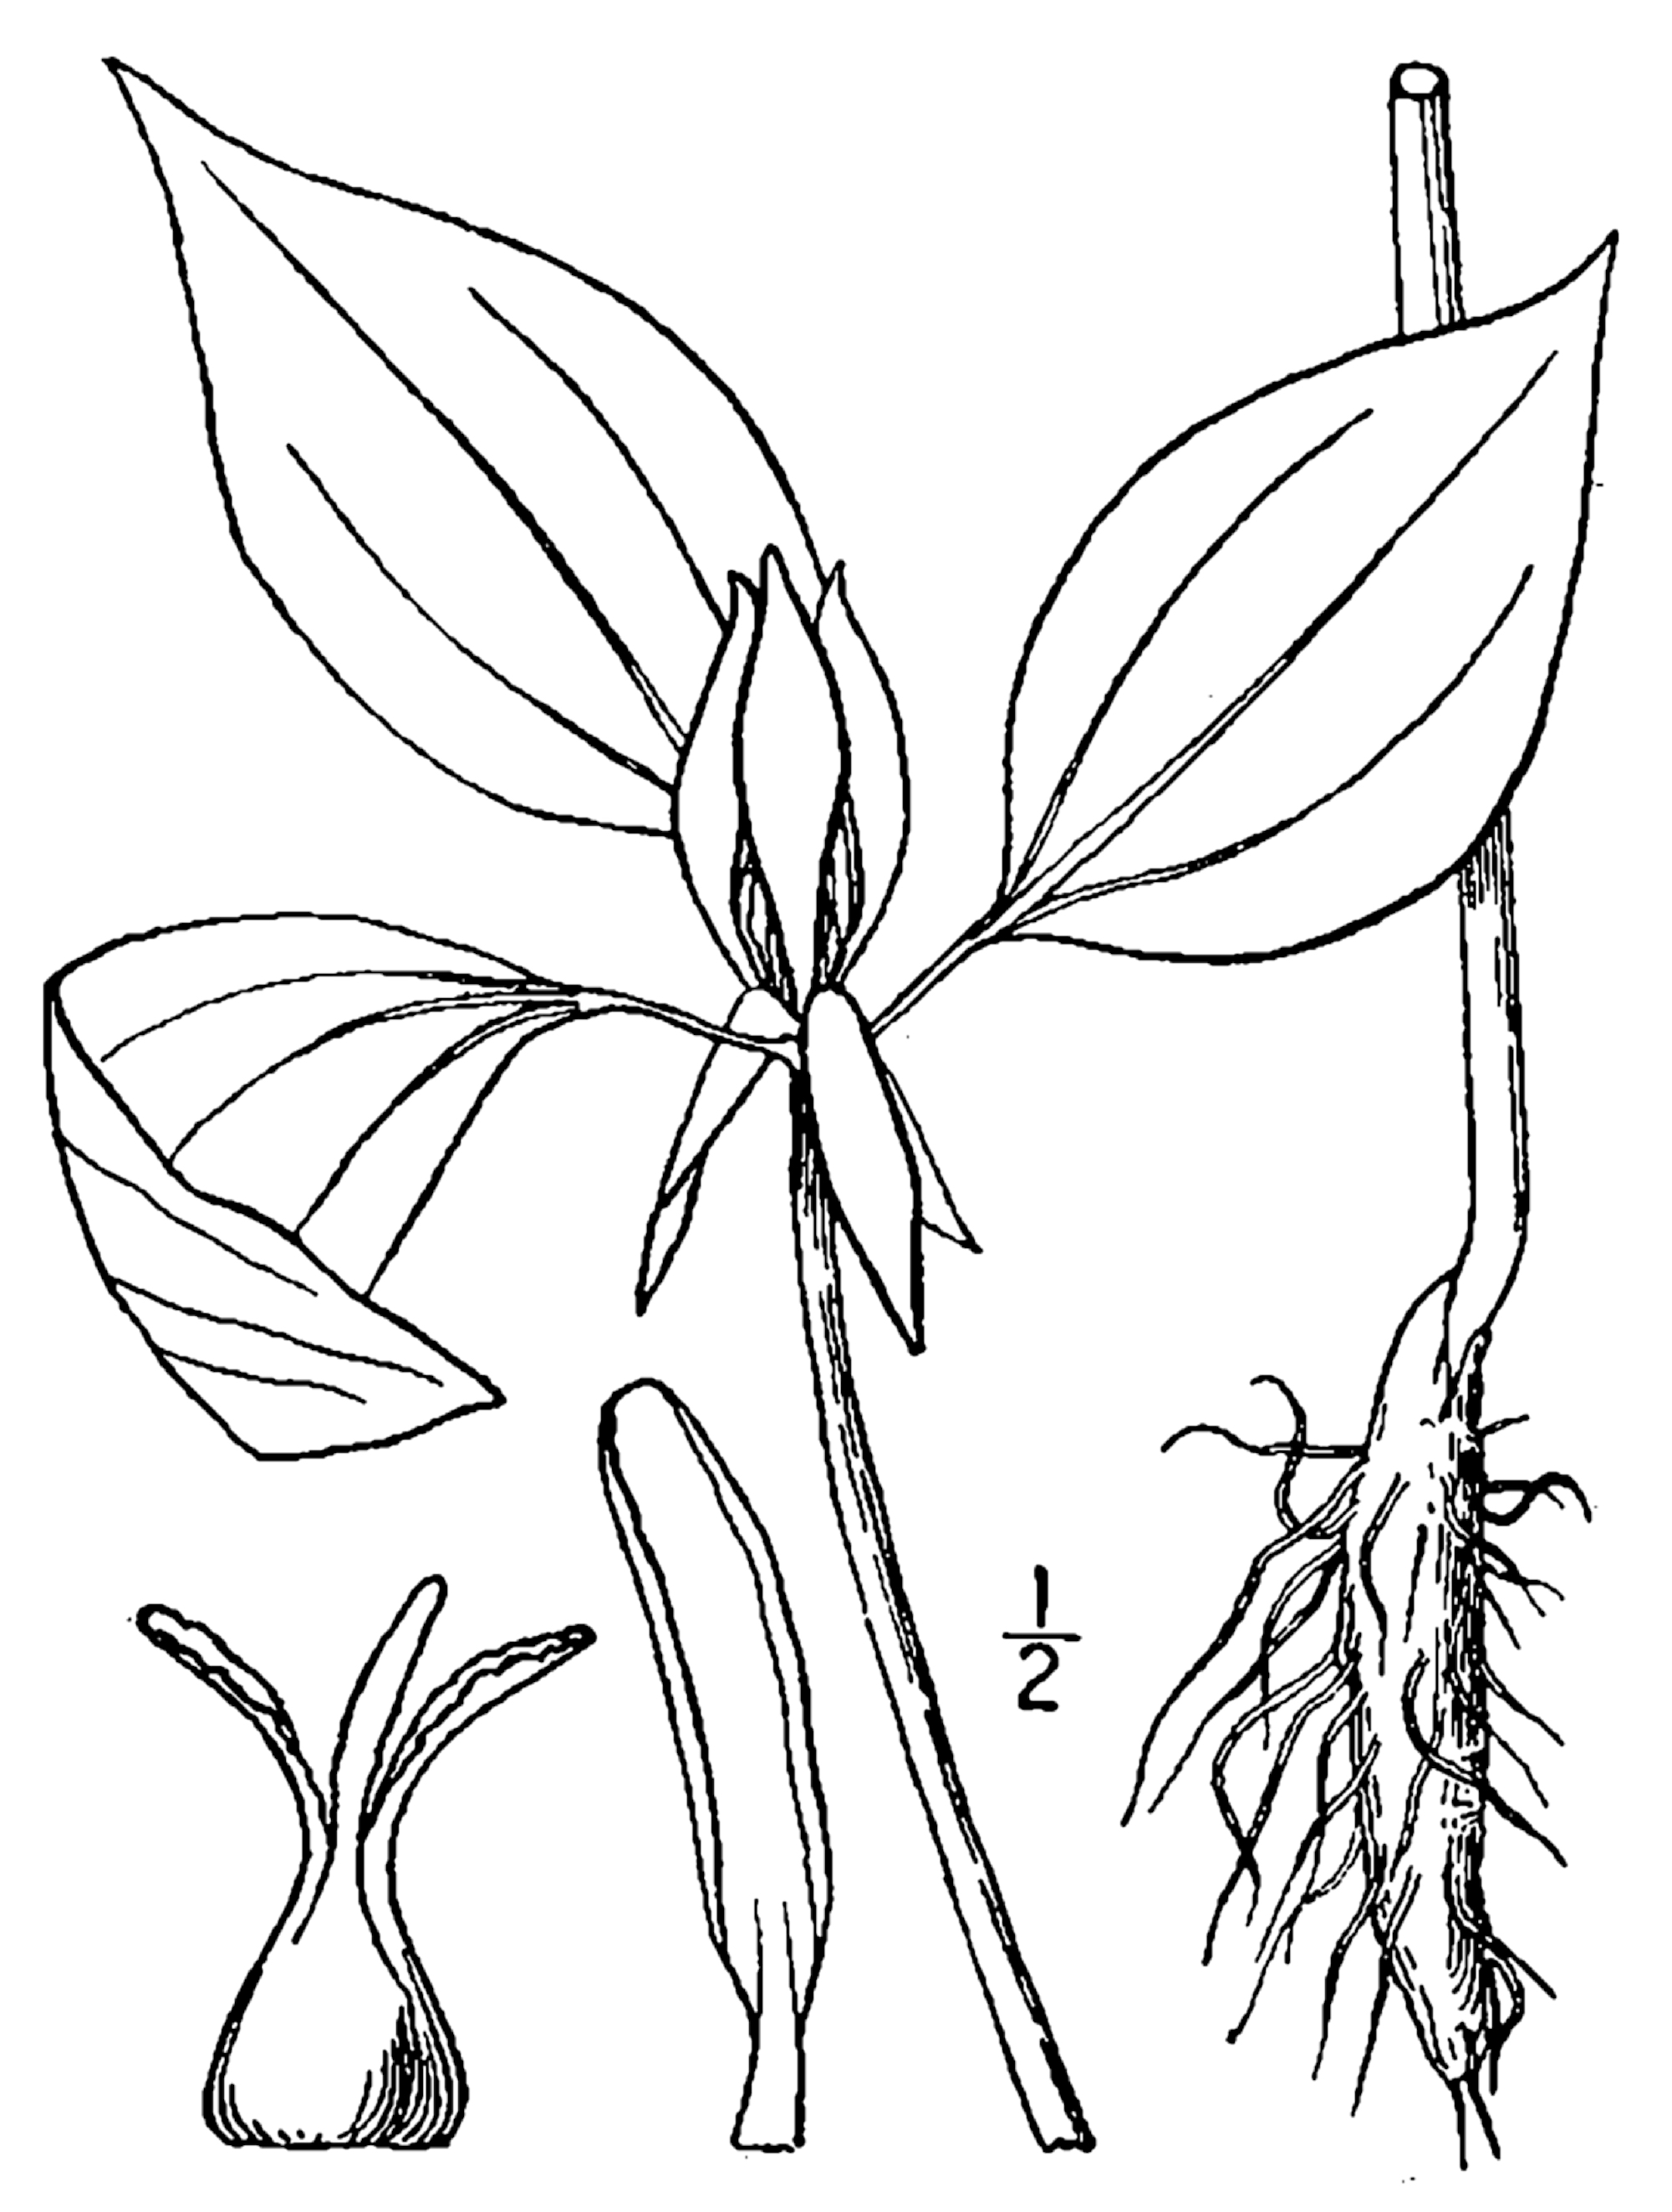 1913 illustration of Trillium Recurvatum.